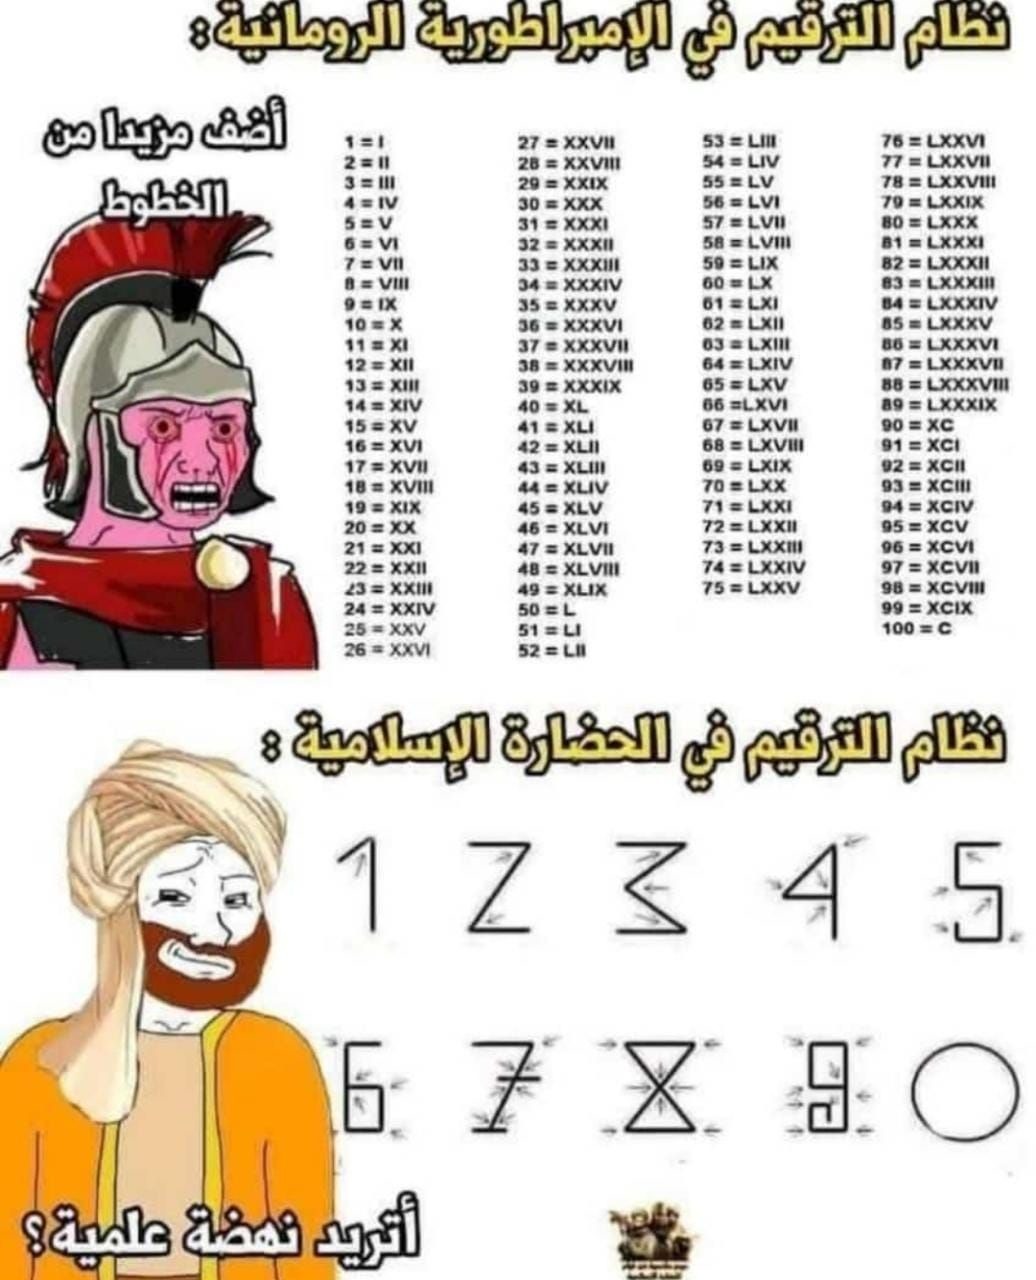 Los árabes siempre los mejores - meme